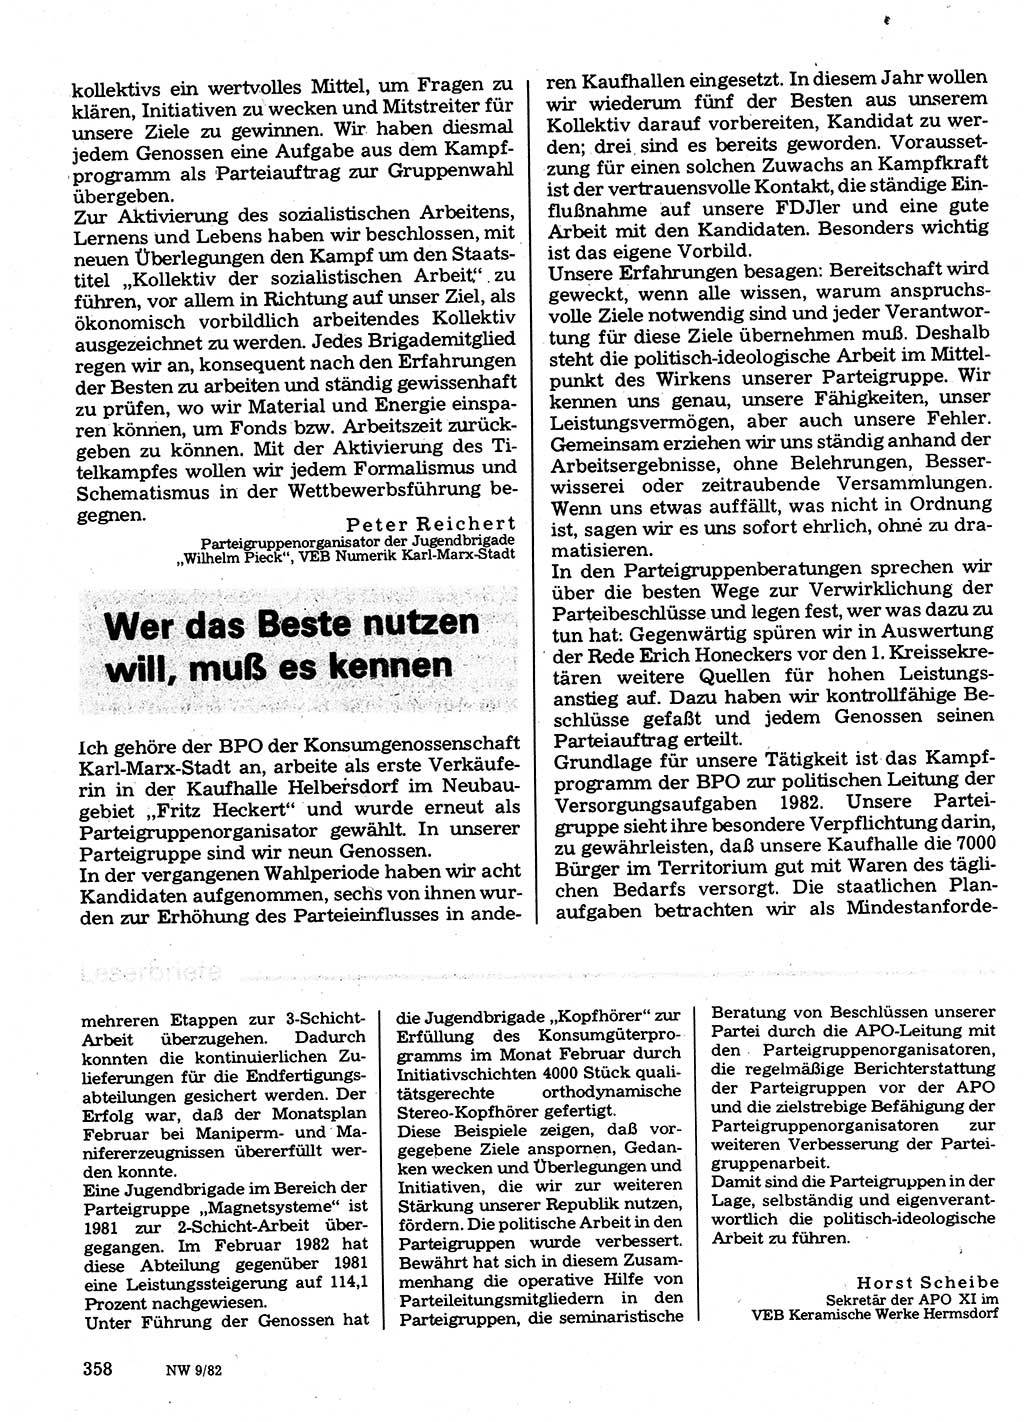 Neuer Weg (NW), Organ des Zentralkomitees (ZK) der SED (Sozialistische Einheitspartei Deutschlands) für Fragen des Parteilebens, 37. Jahrgang [Deutsche Demokratische Republik (DDR)] 1982, Seite 358 (NW ZK SED DDR 1982, S. 358)